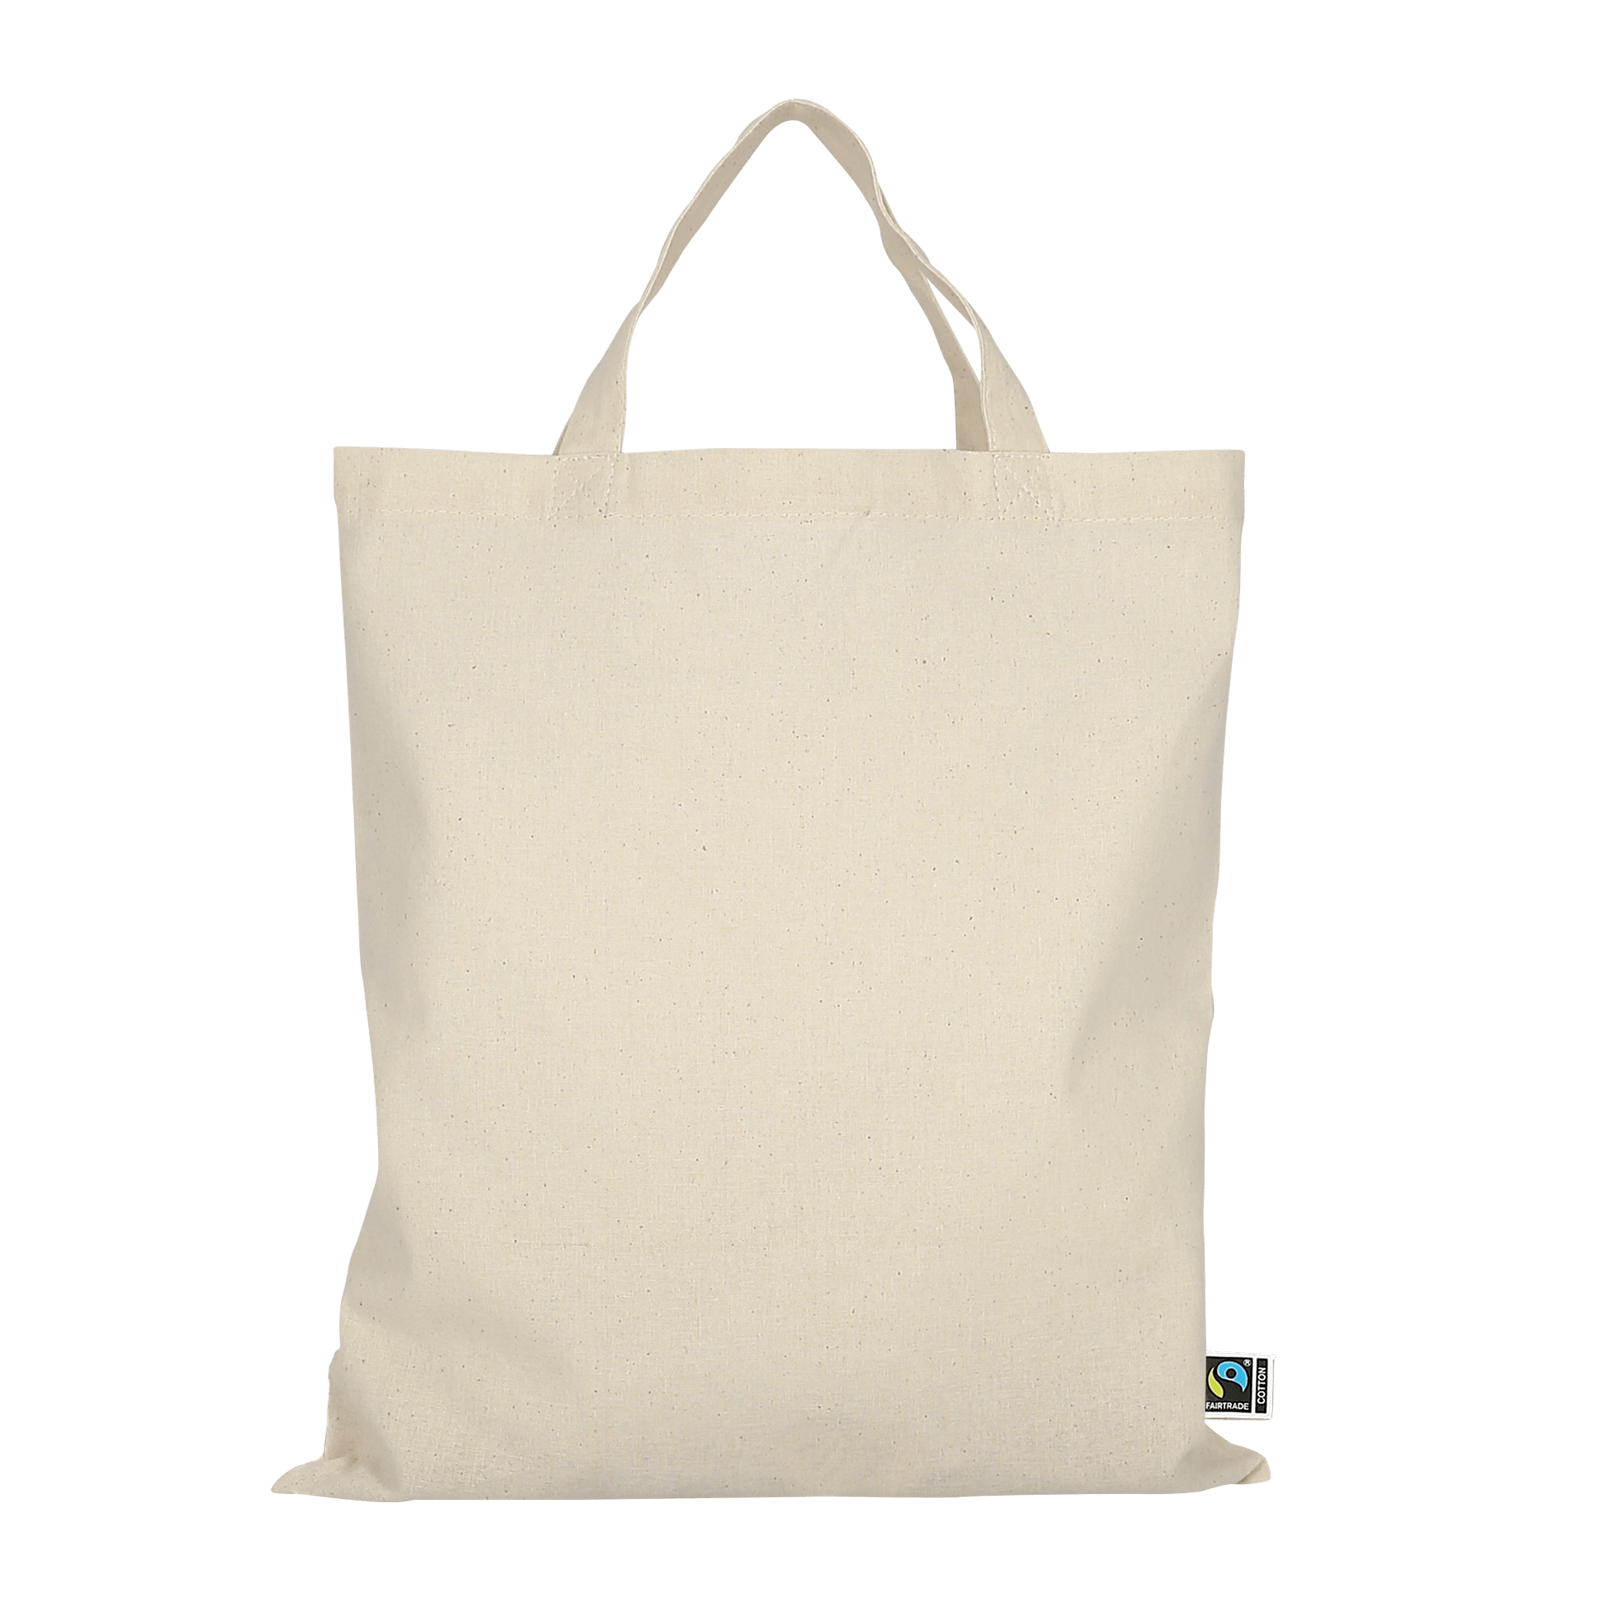 TEXXILLA Midi - Tasche aus Fairtrade-zertifizierter Baumwolle